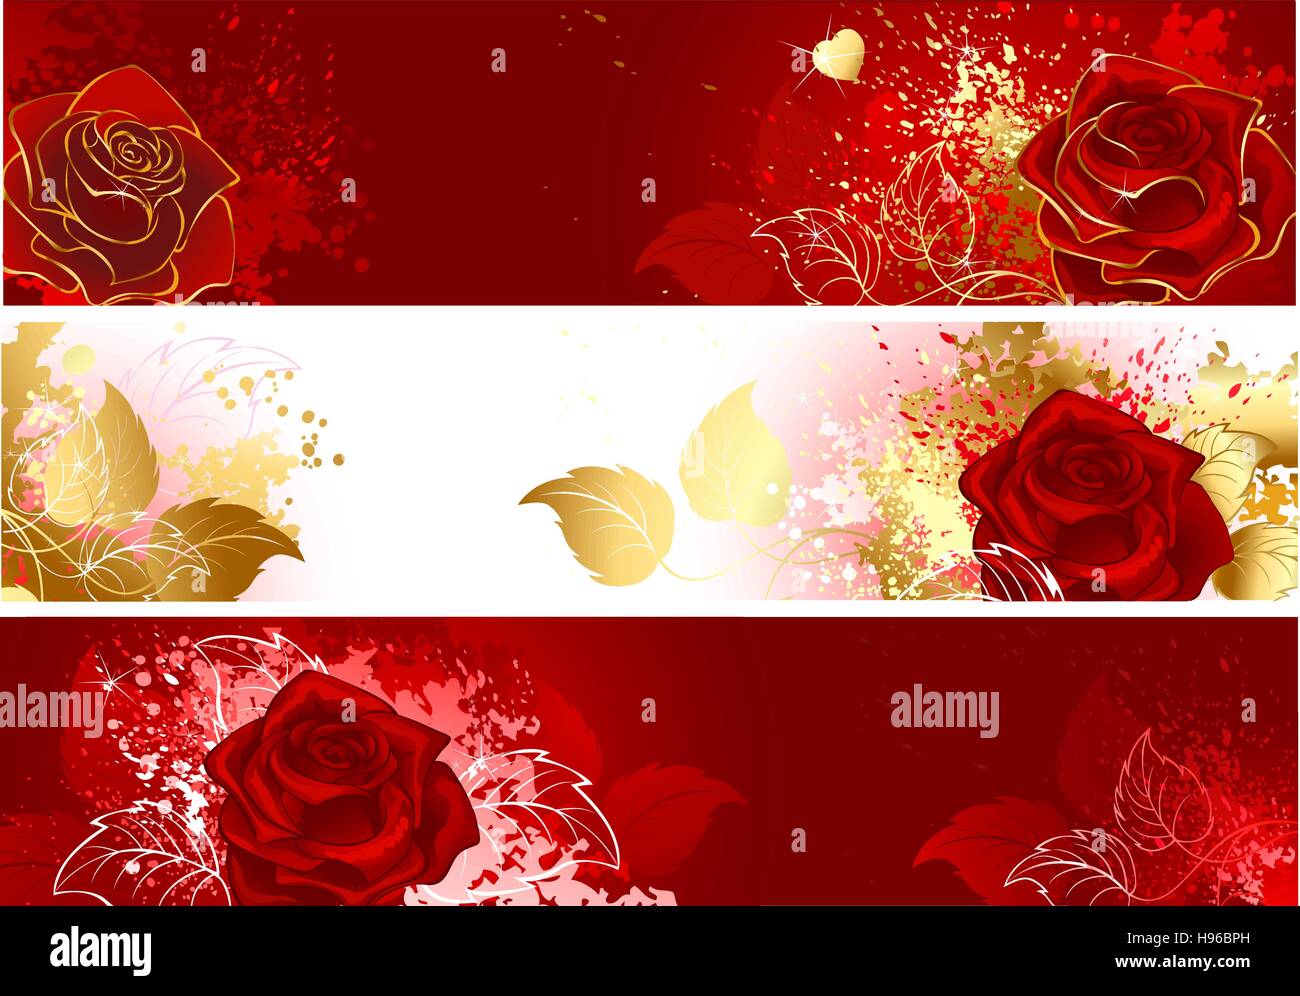 Drei horizontale Banner mit roten Rosen dekoriert mit Spritzern von Farbe. Stock Vektor